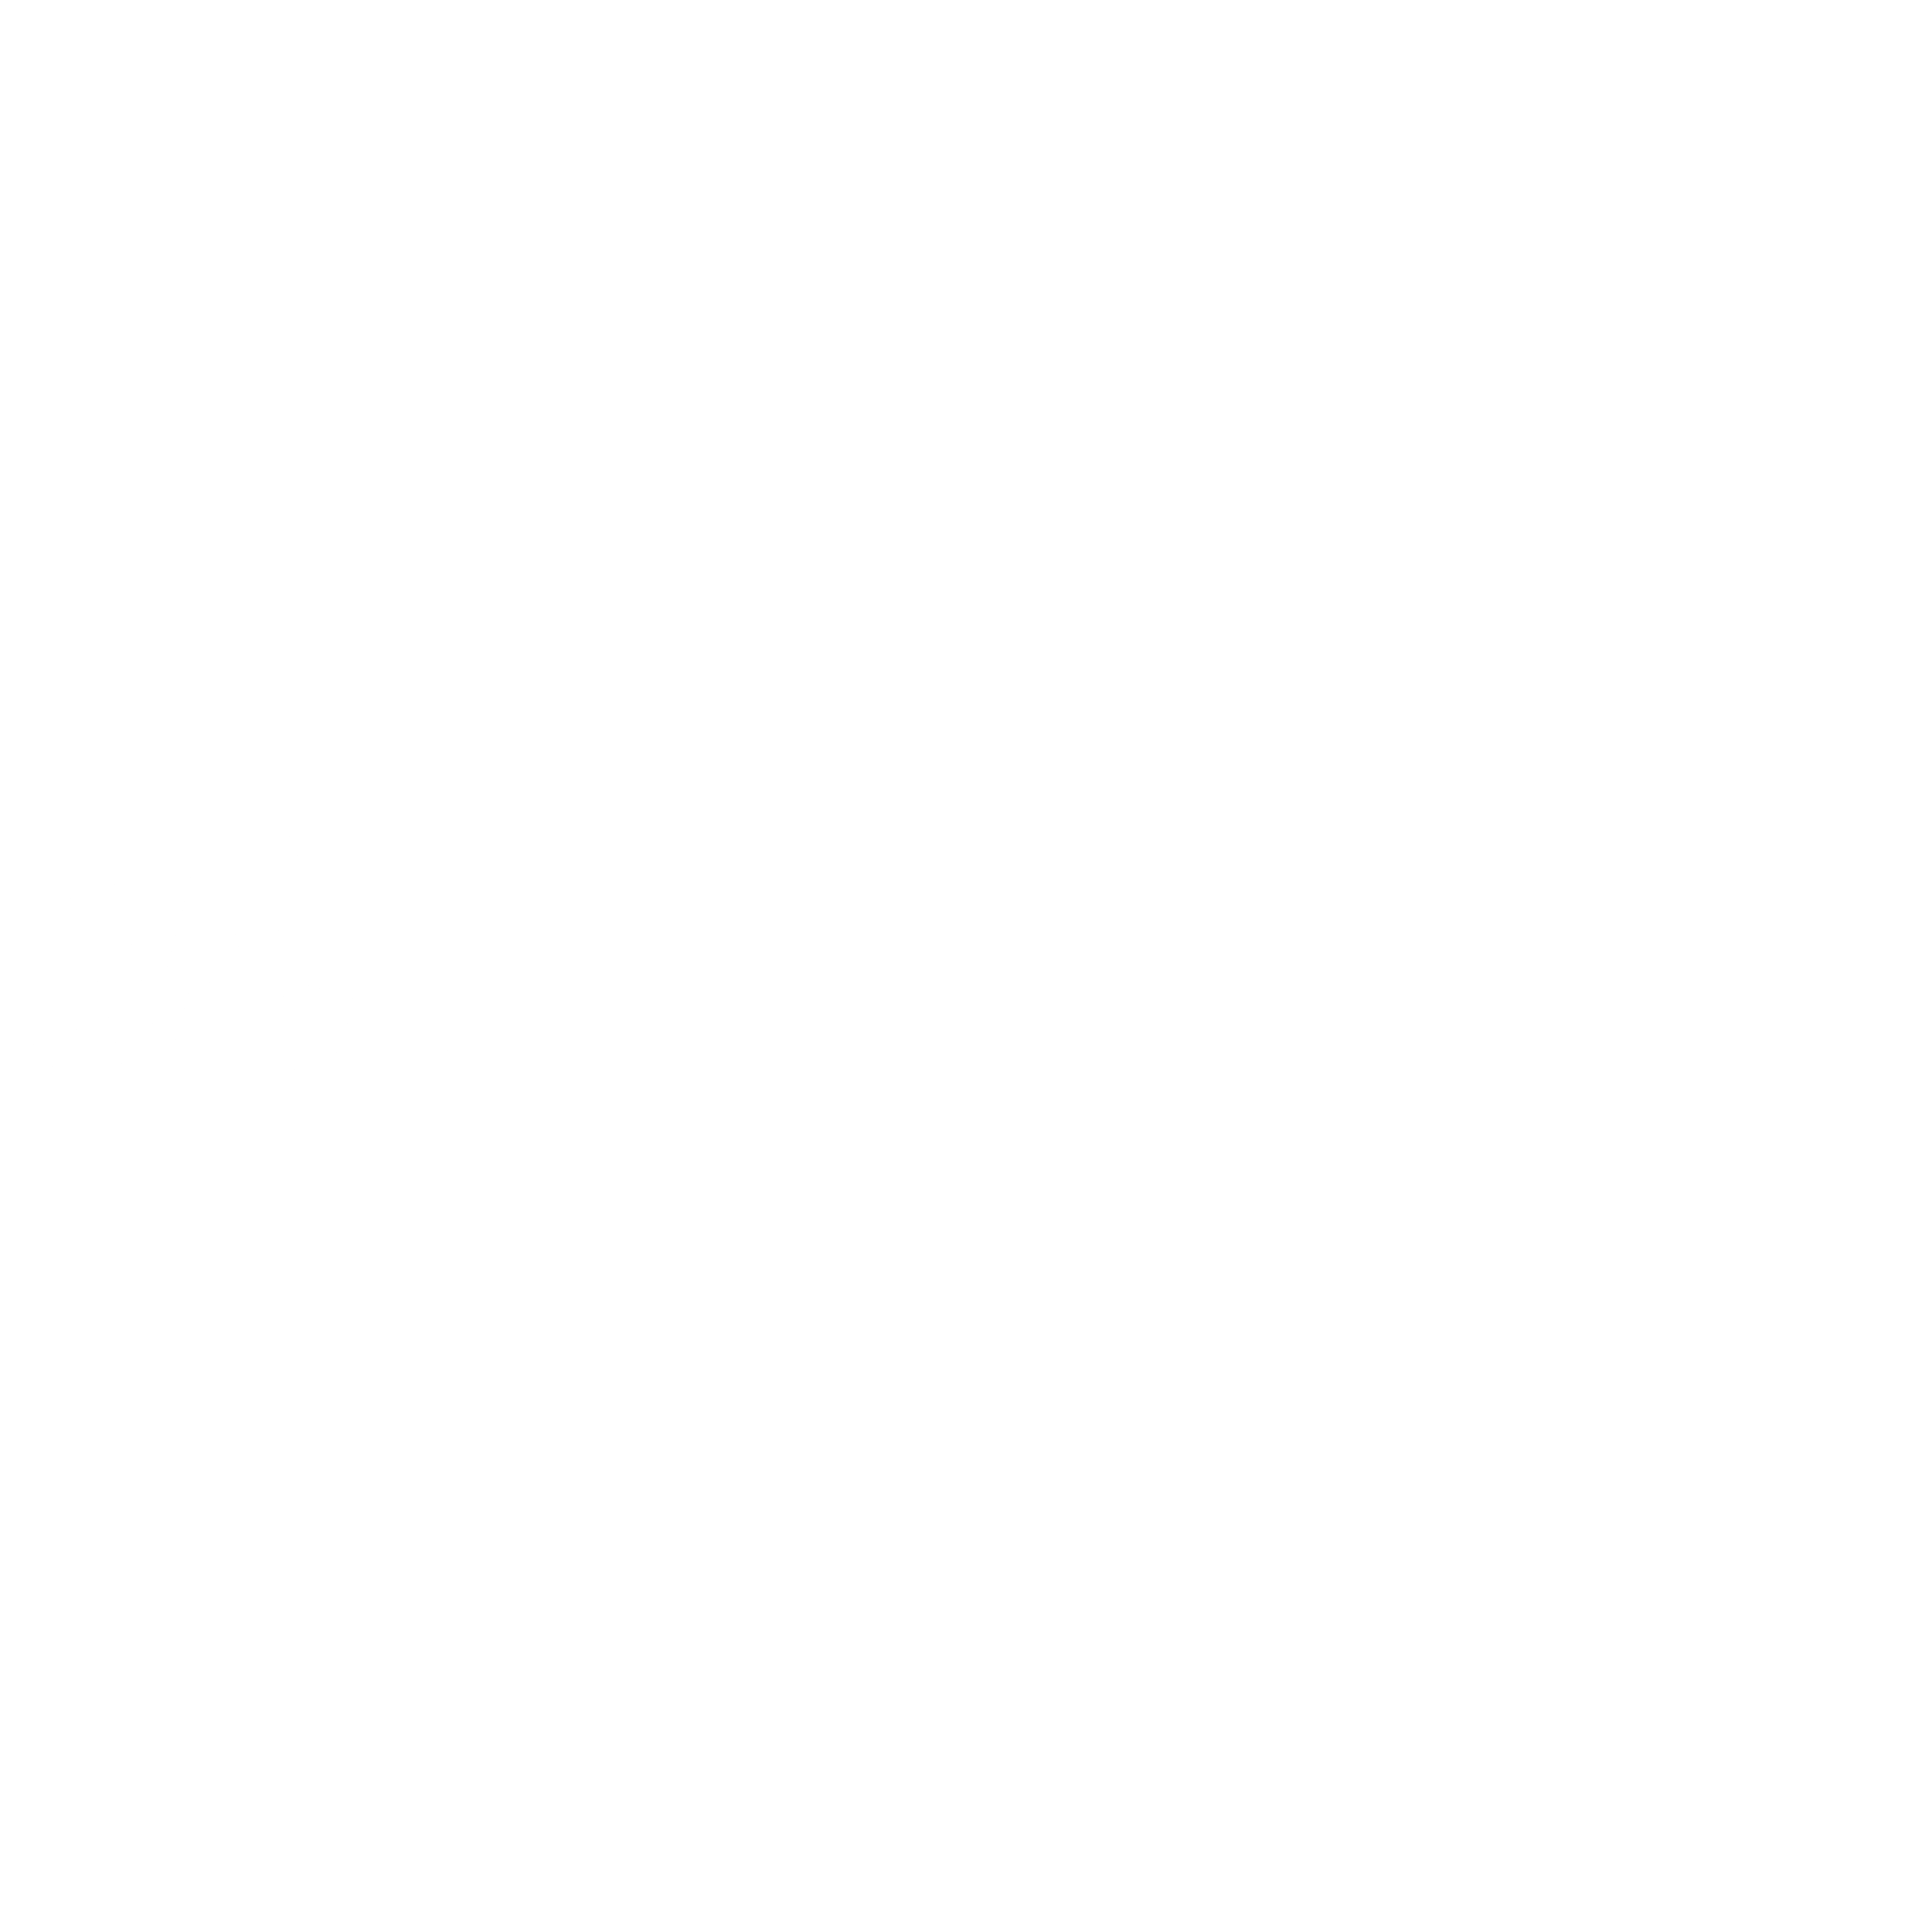 Woodward Logo PNG Transparent & SVG Vector.